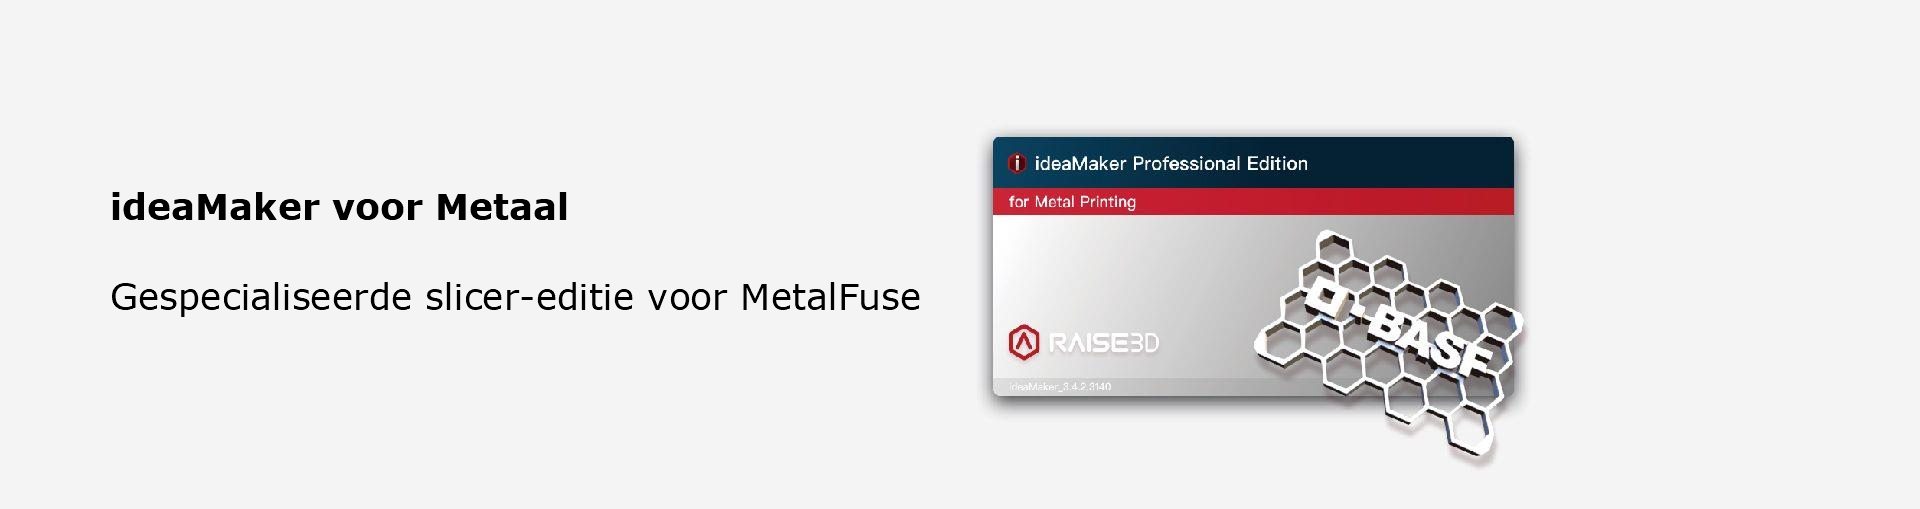 Raise3D ideaMaker voor Metaal